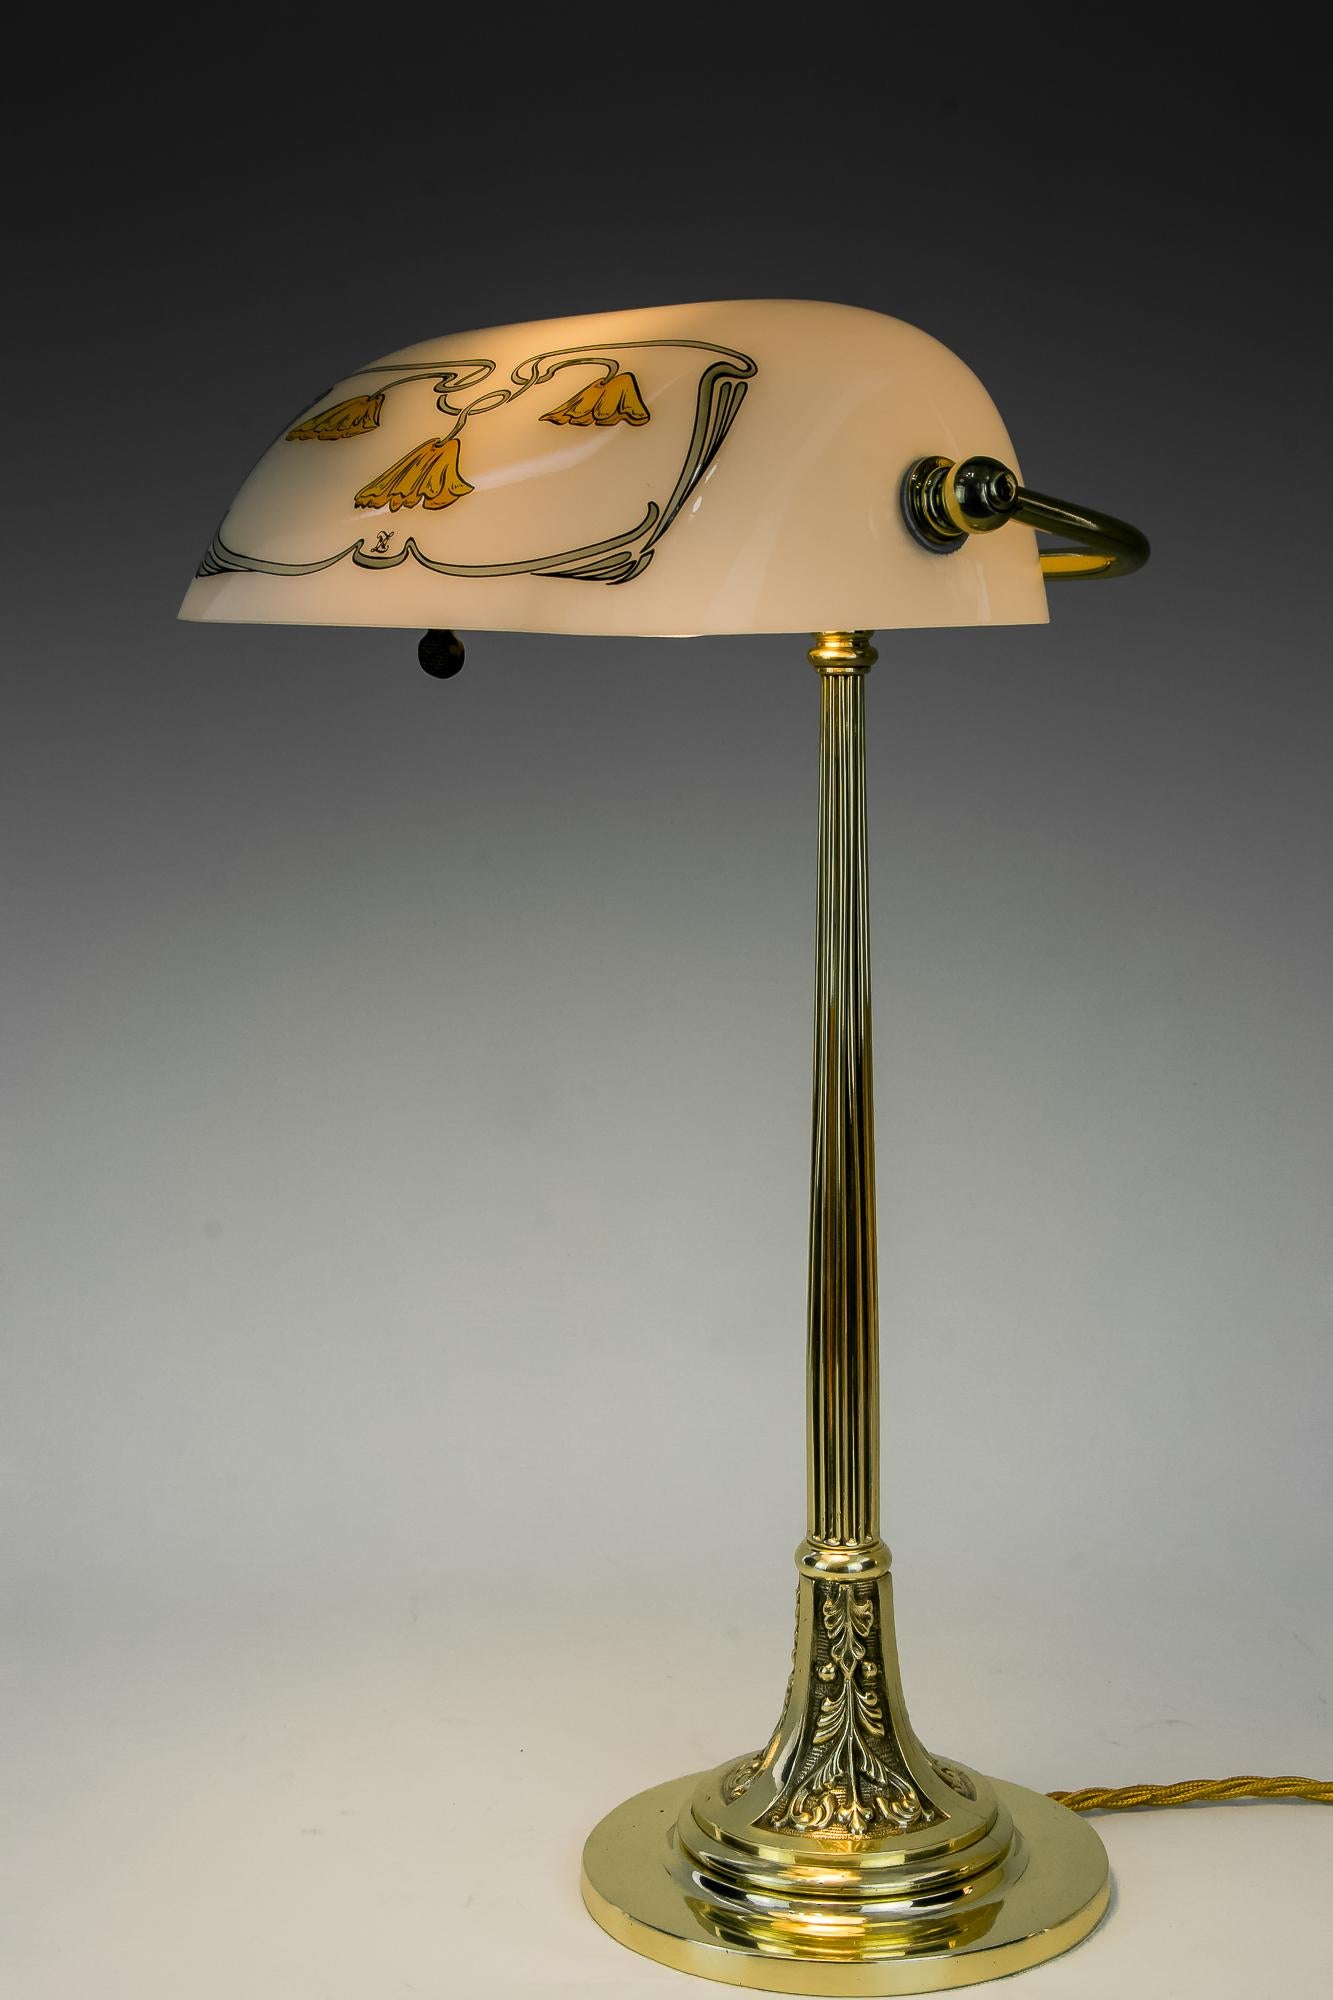 Lampe de table Jugendstil avec nouvel abat-jour en verre, Vienne, vers 1908.
Laiton poli et émaillé au four.